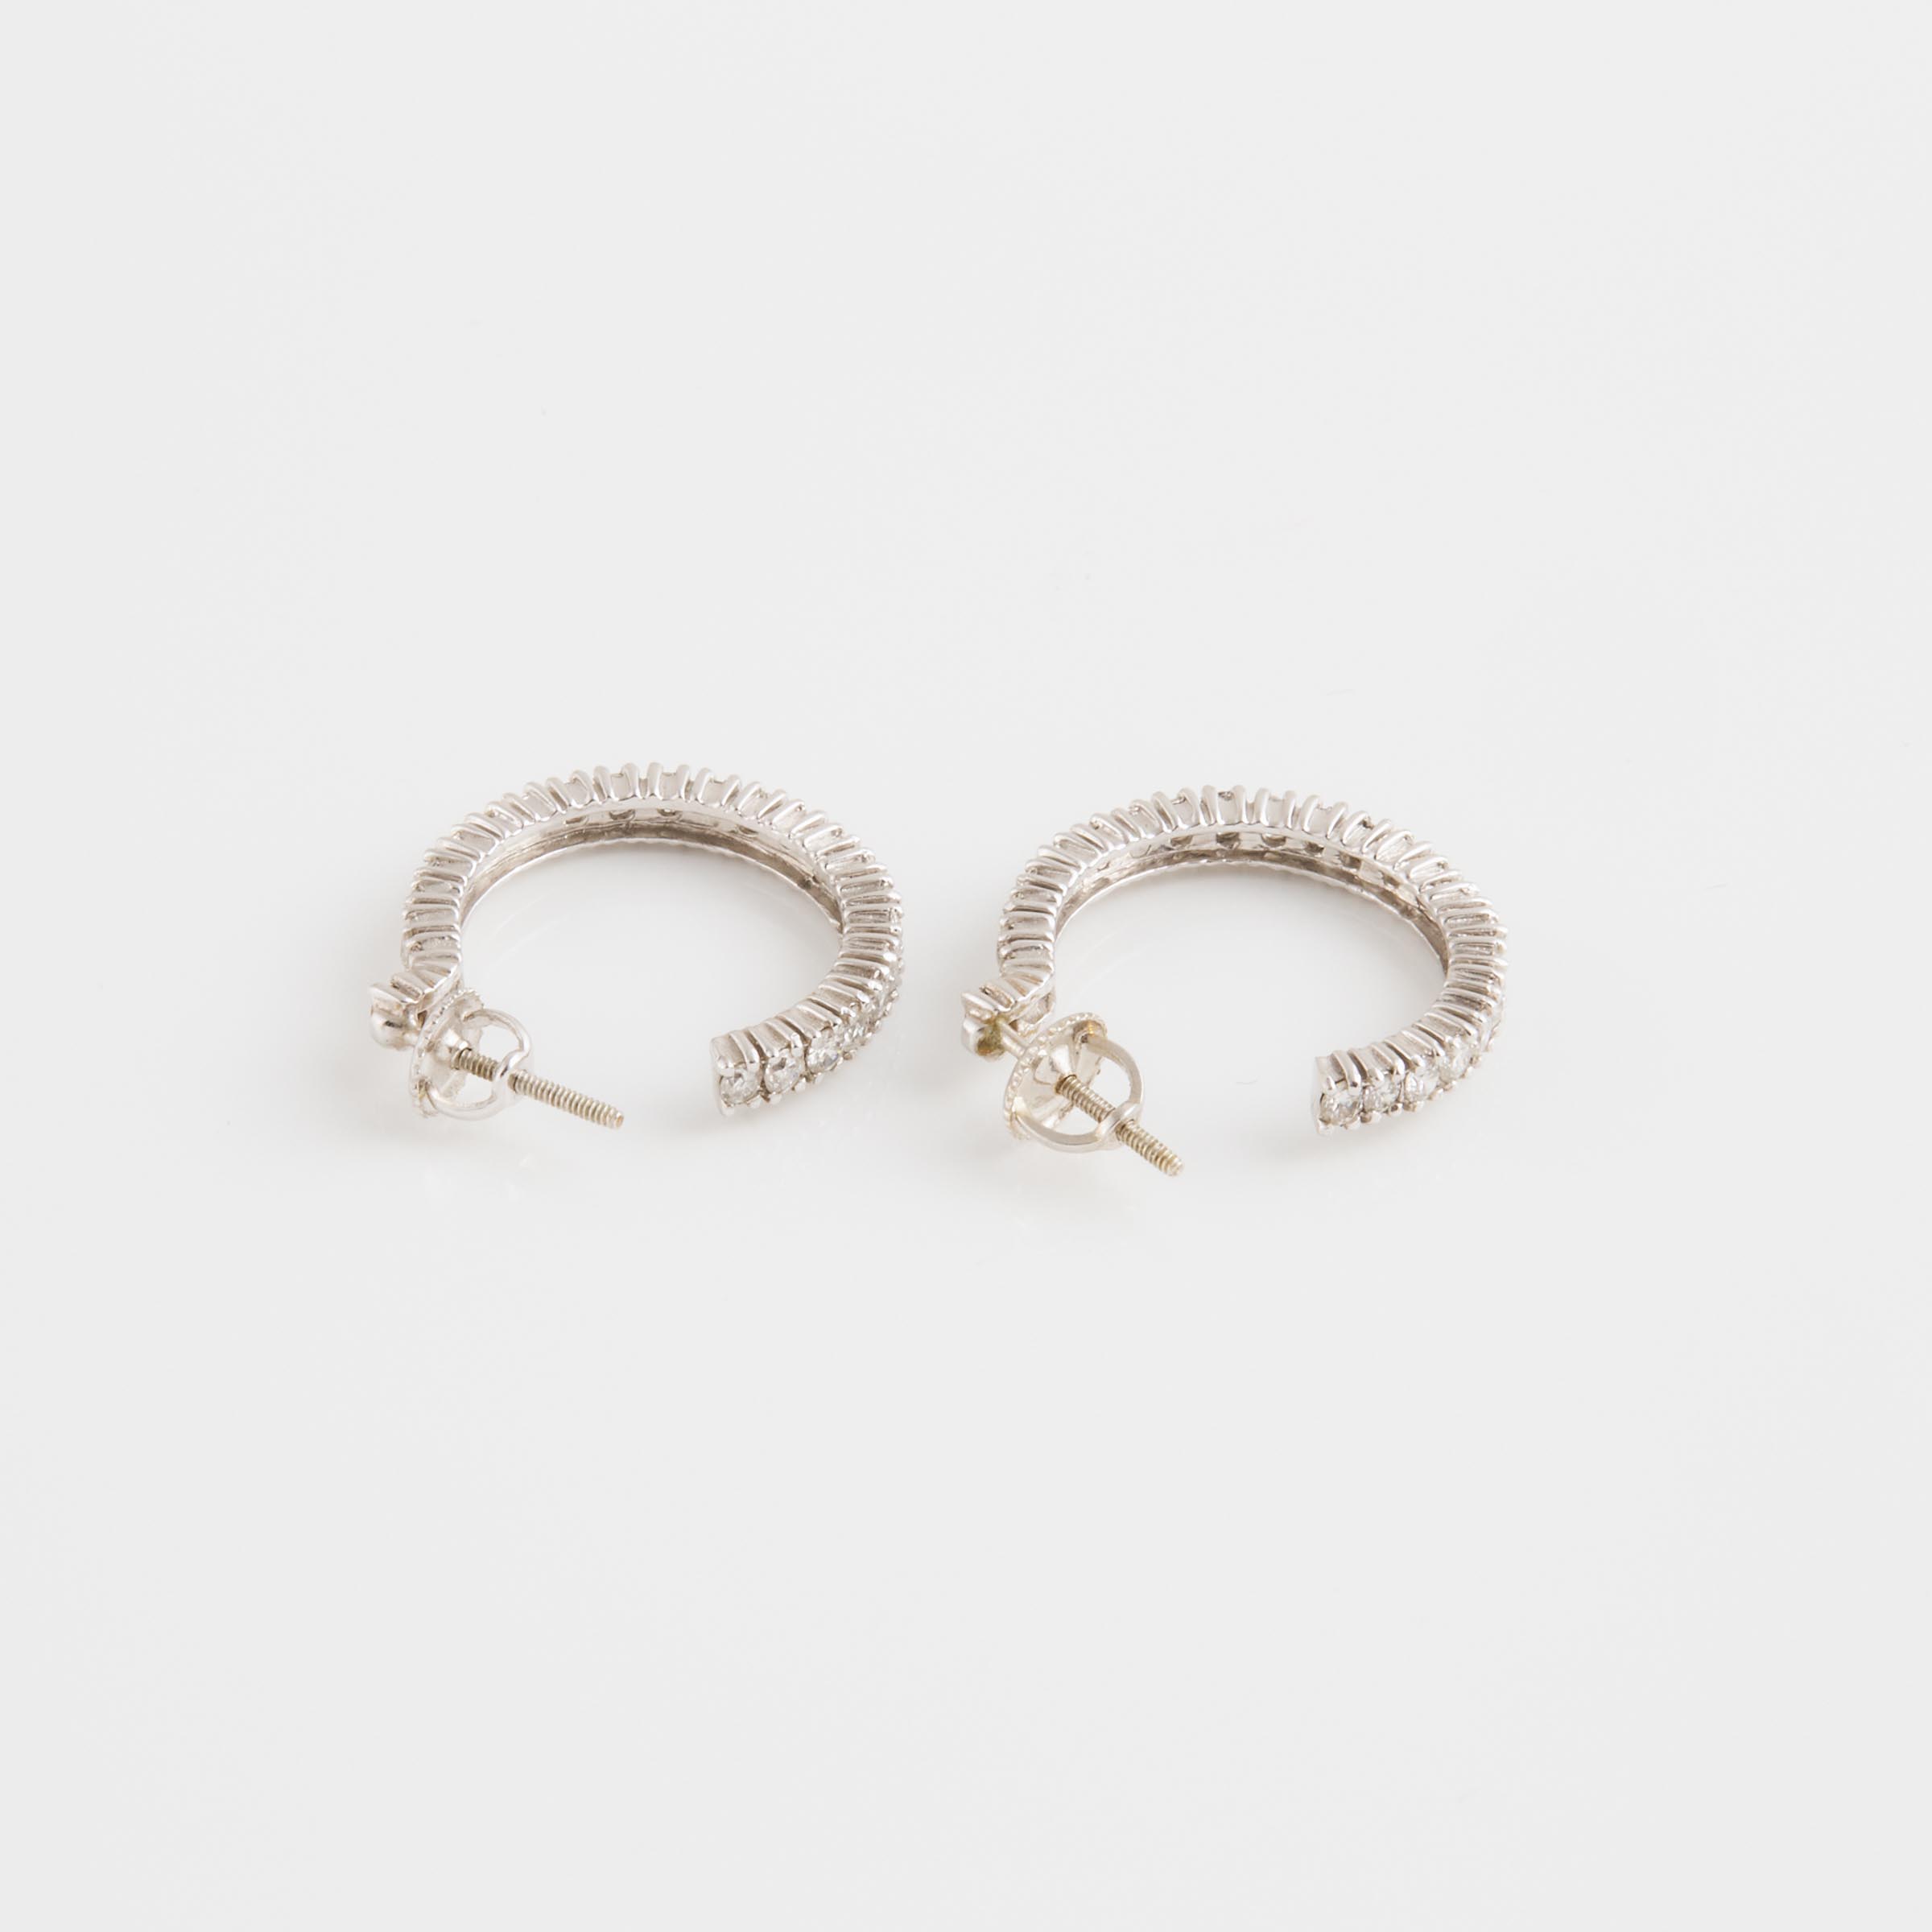 Pair Of 14k White Gold Hoop Earrings